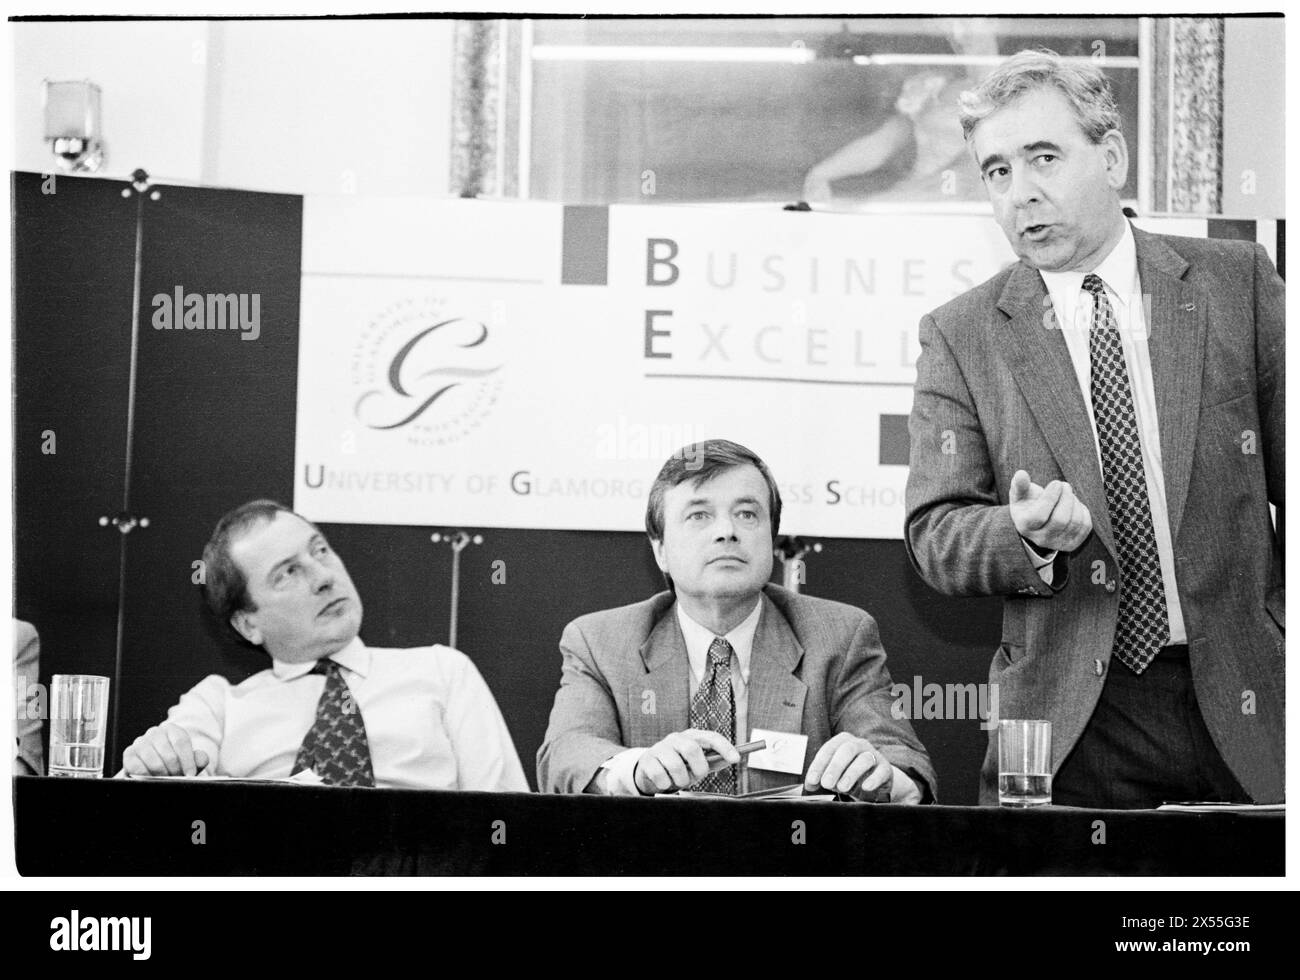 DAFYDD WIGLEY, PLAID CYMRU, 1995 : le leader de plaid Cymru Dafydd Wigley est suivi par Ron Davies et Glyn Mathias lors d'un panel politique public sur le développement régional organisé par l'université. Les politiciens gallois se réunissent pour une conférence sur le développement à l'Université de Glamorgan à Treforest, pays de Galles, Royaume-Uni le 5 juin 1995. Photo : Rob Watkins. INFO : Dafydd Wigley, un éminent politicien gallois, a été le chef de Plaid Cymru de 1981 à 1984 et de nouveau de 1991 à 2000. Connu pour son plaidoyer passionné pour l'indépendance galloise, il a joué un rôle central dans l'élaboration de la politique galloise. Banque D'Images